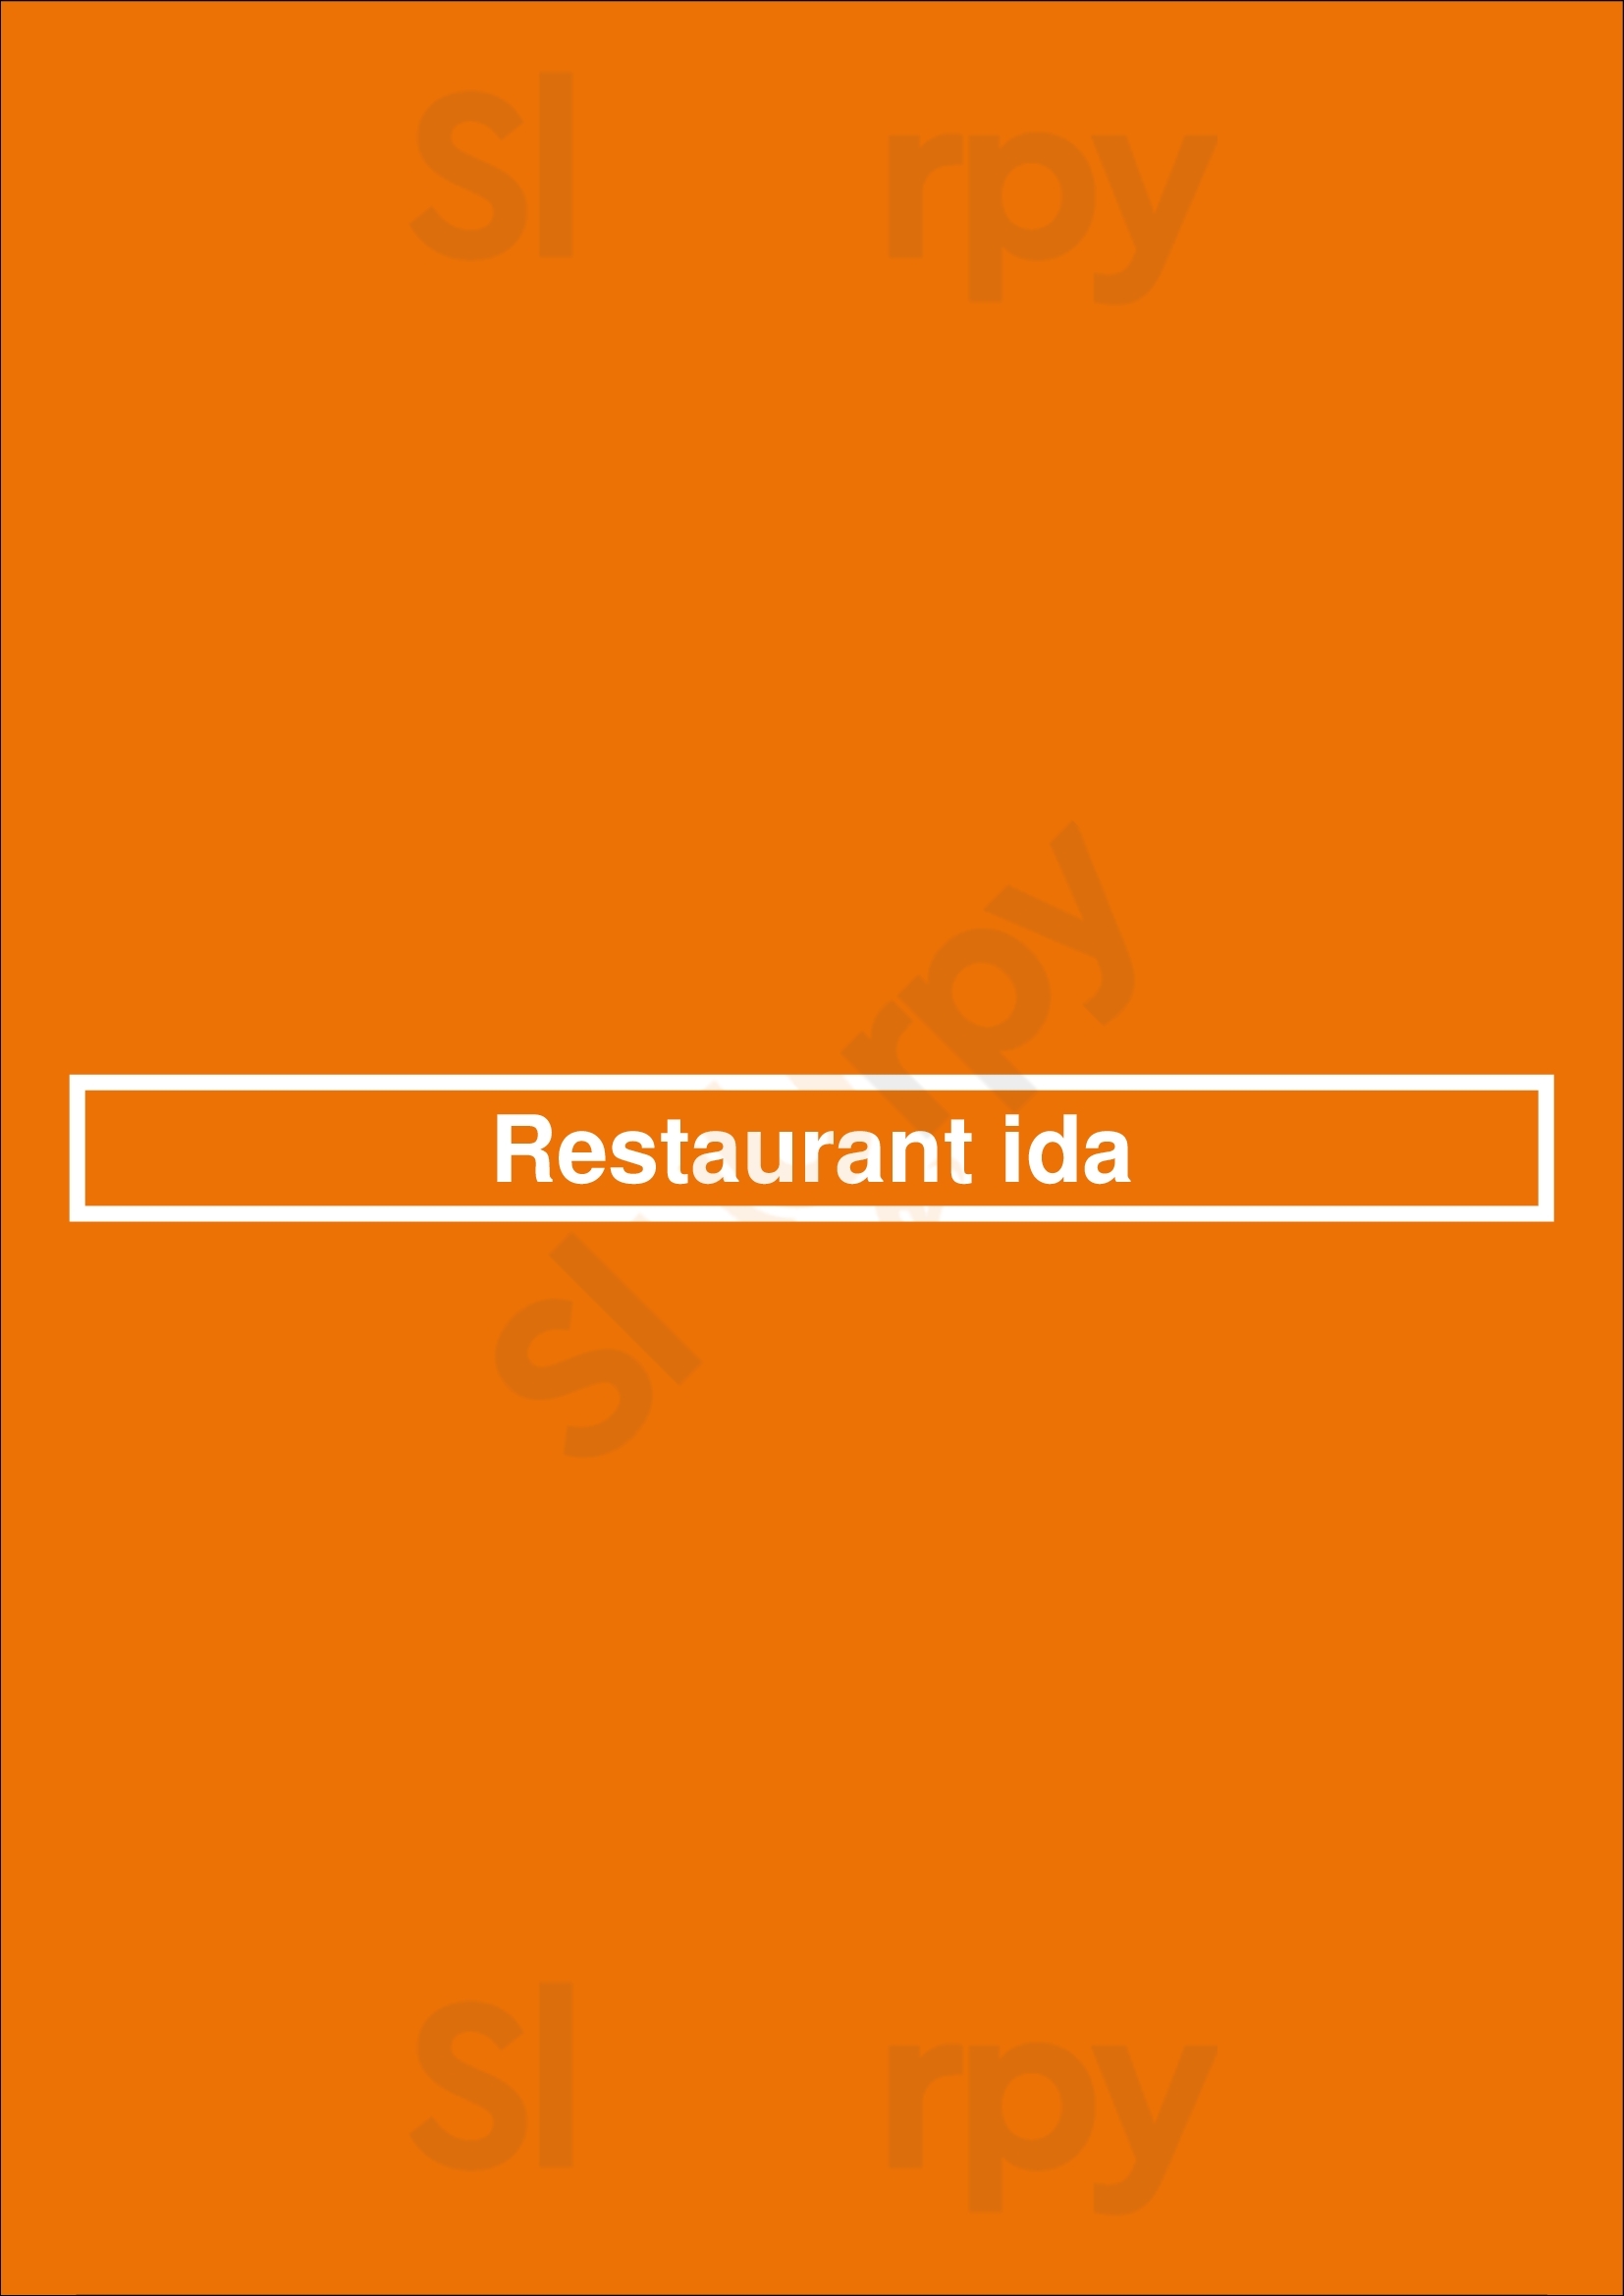 Restaurant Ida Almere Menu - 1